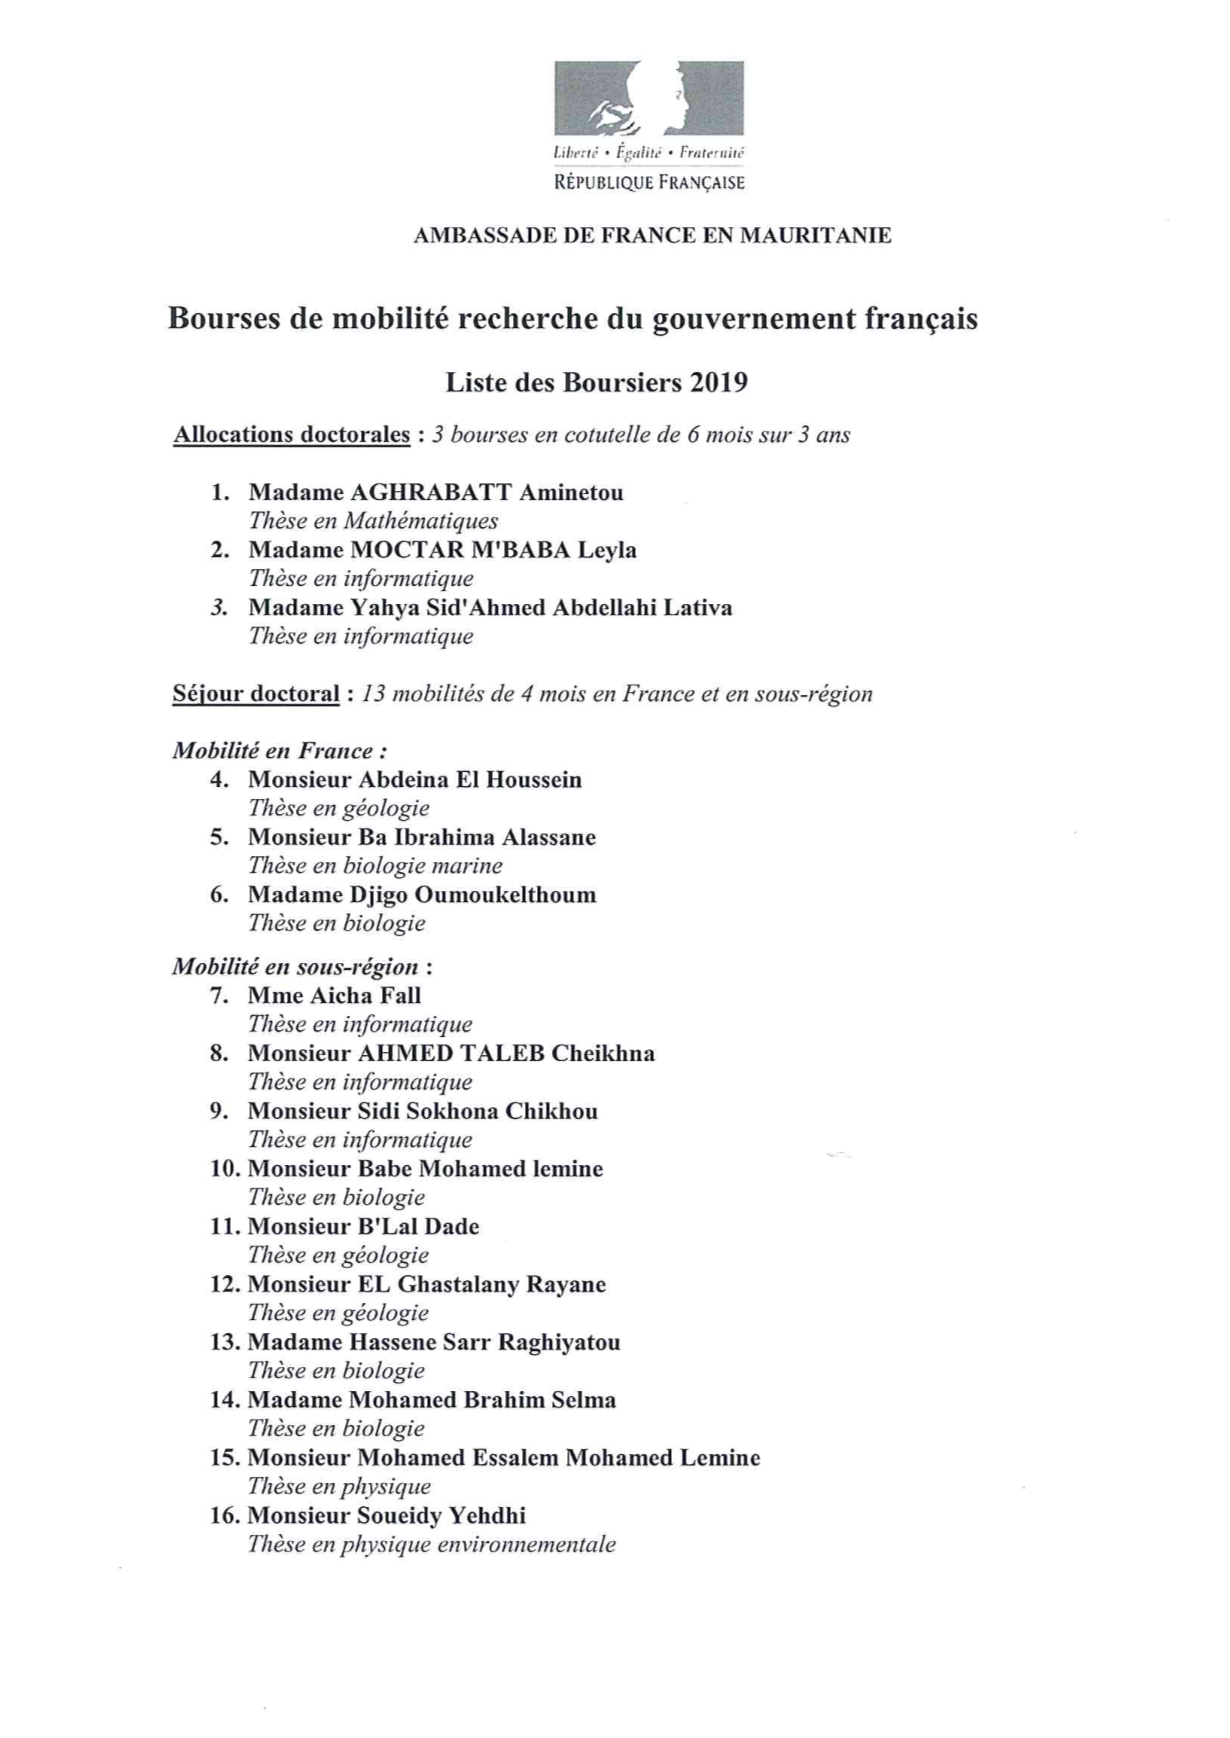 Liste des boursiers du gouvernement français 2019